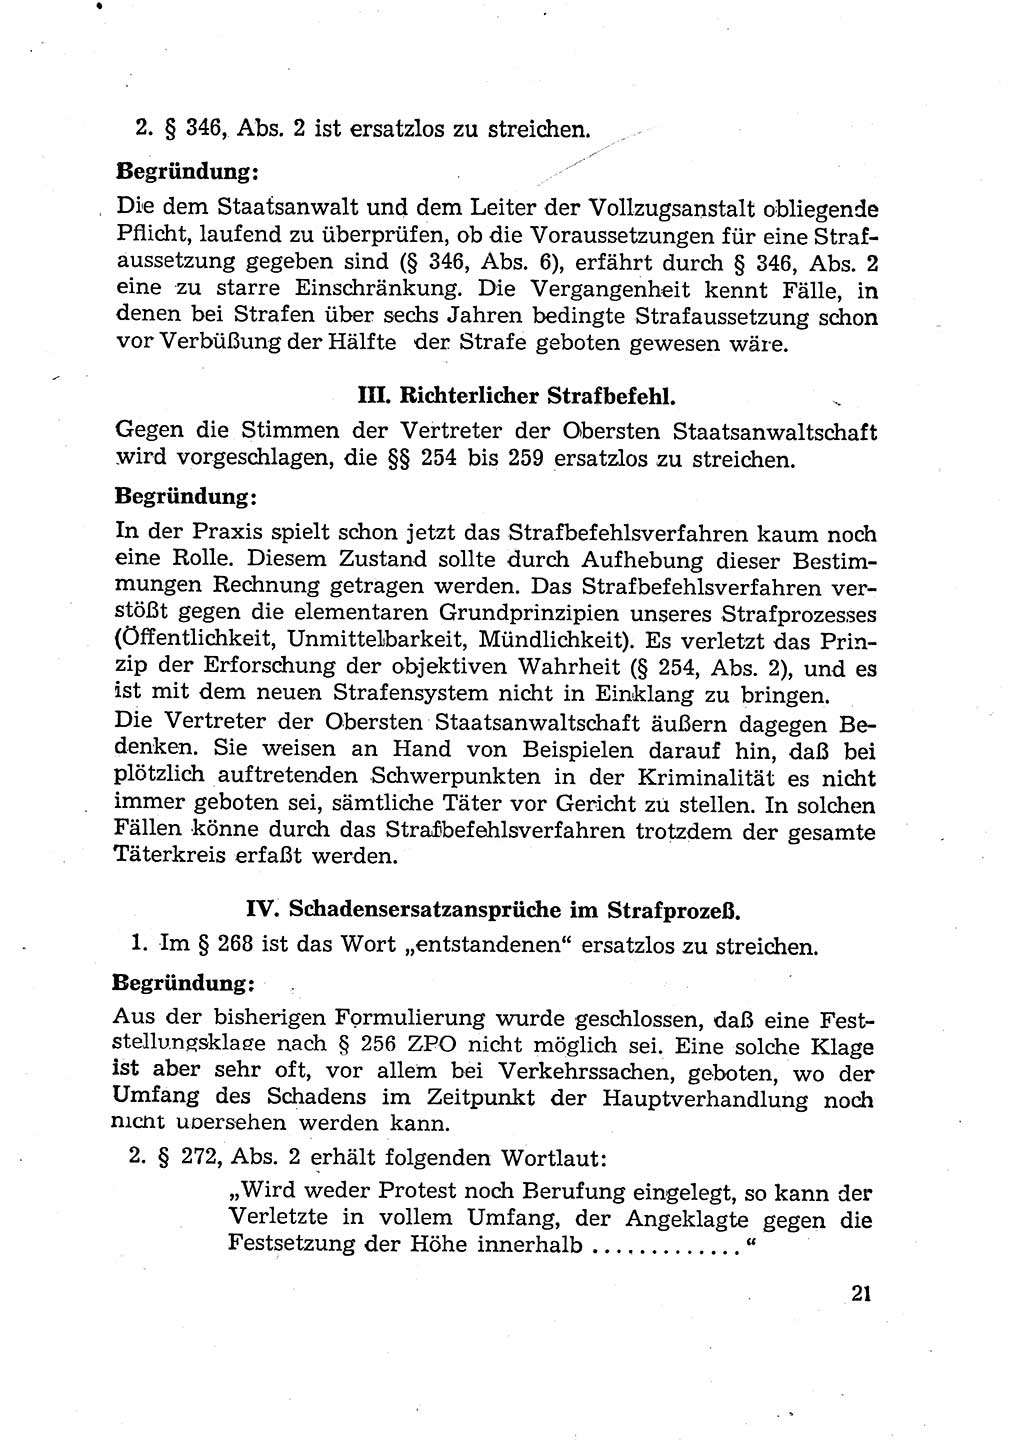 Bericht der Kommission zur Überprüfung der Anwendung der StPO (Strafprozeßordnung) [Deutsche Demokratische Republik (DDR)] 1956, Seite 21 (Ber. StPO DDR 1956, S. 21)